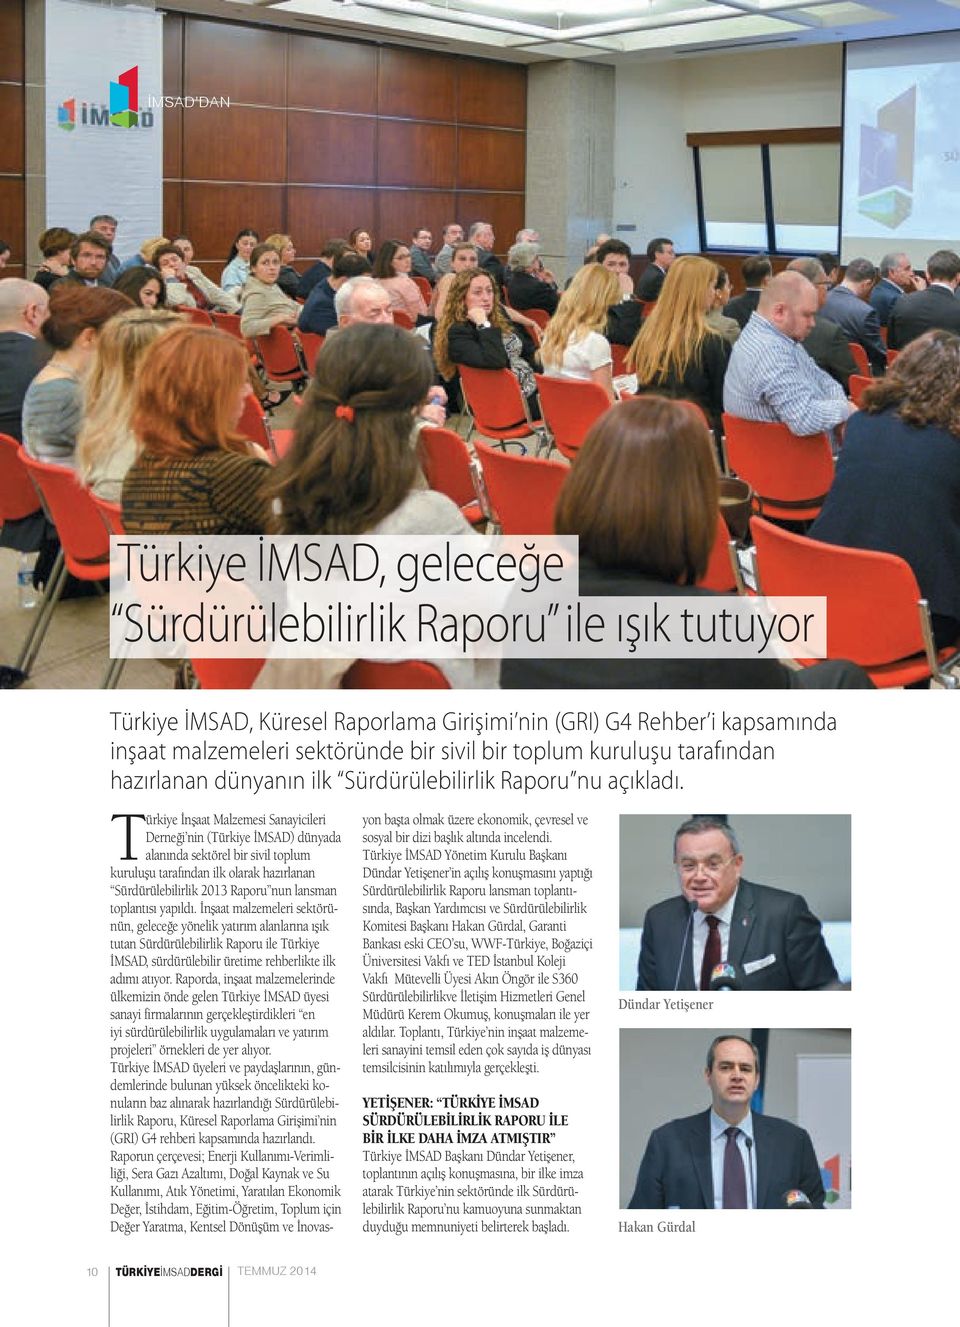 Türkiye İnşaat Malzemesi Sanayicileri Derneği nin (Türkiye İMSAD) dünyada alanında sektörel bir sivil toplum kuruluşu tarafından ilk olarak hazırlanan Sürdürülebilirlik 2013 Raporu nun lansman